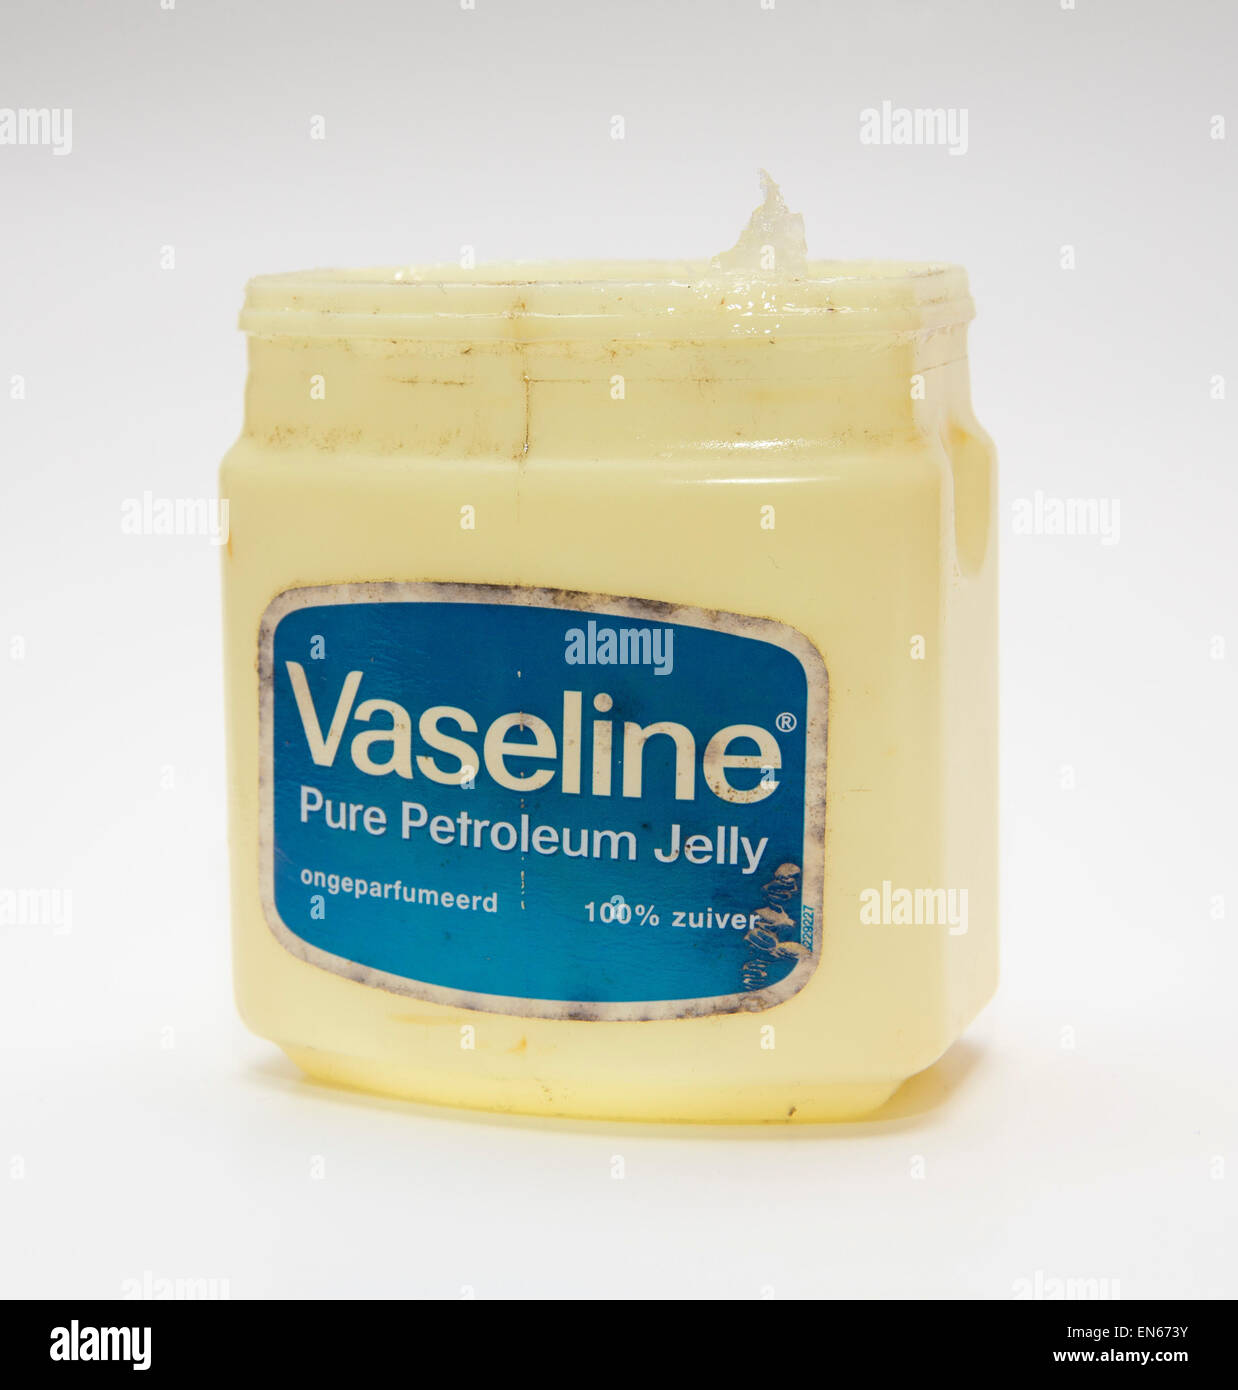 Tub of Vaseline petroleum jelly, isolated on white background. Stock Photo